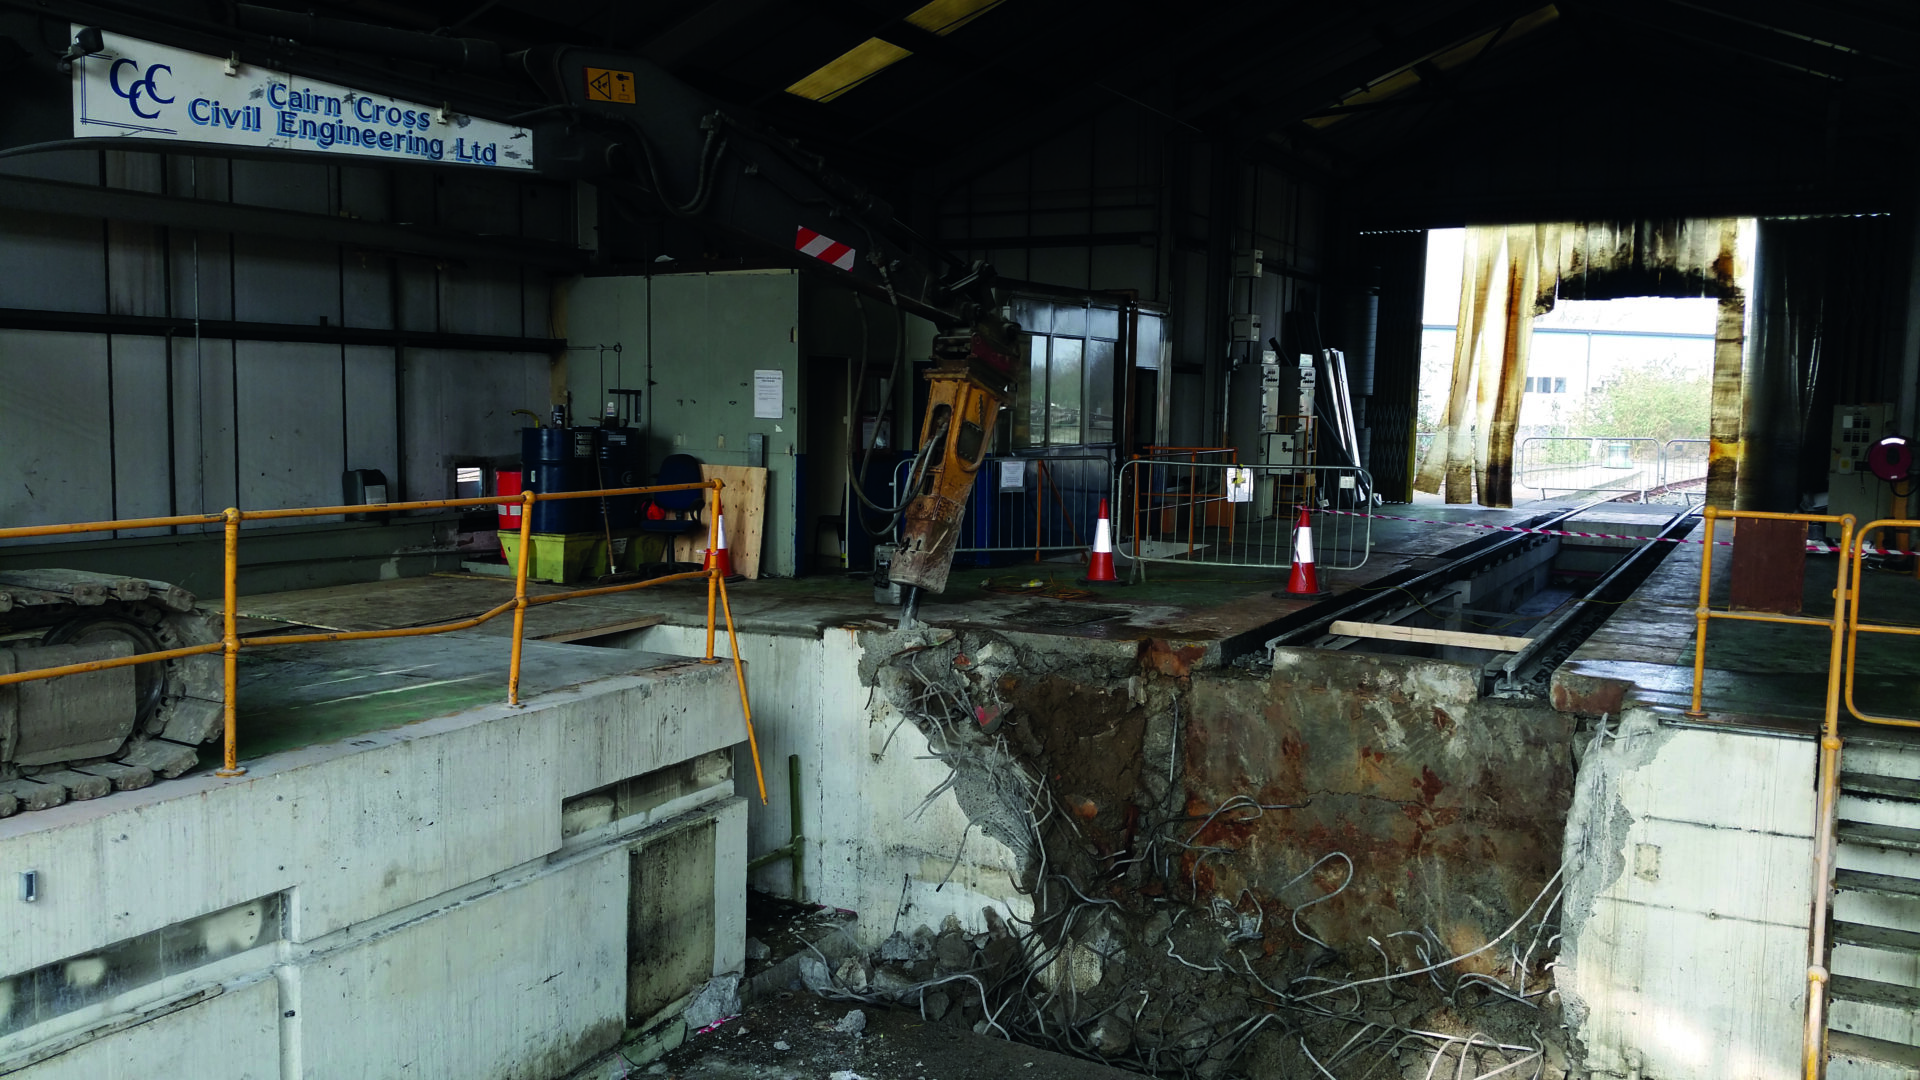 Wimbledon South West Trains Wheel Lathe Pit Excavation Cairn Cross